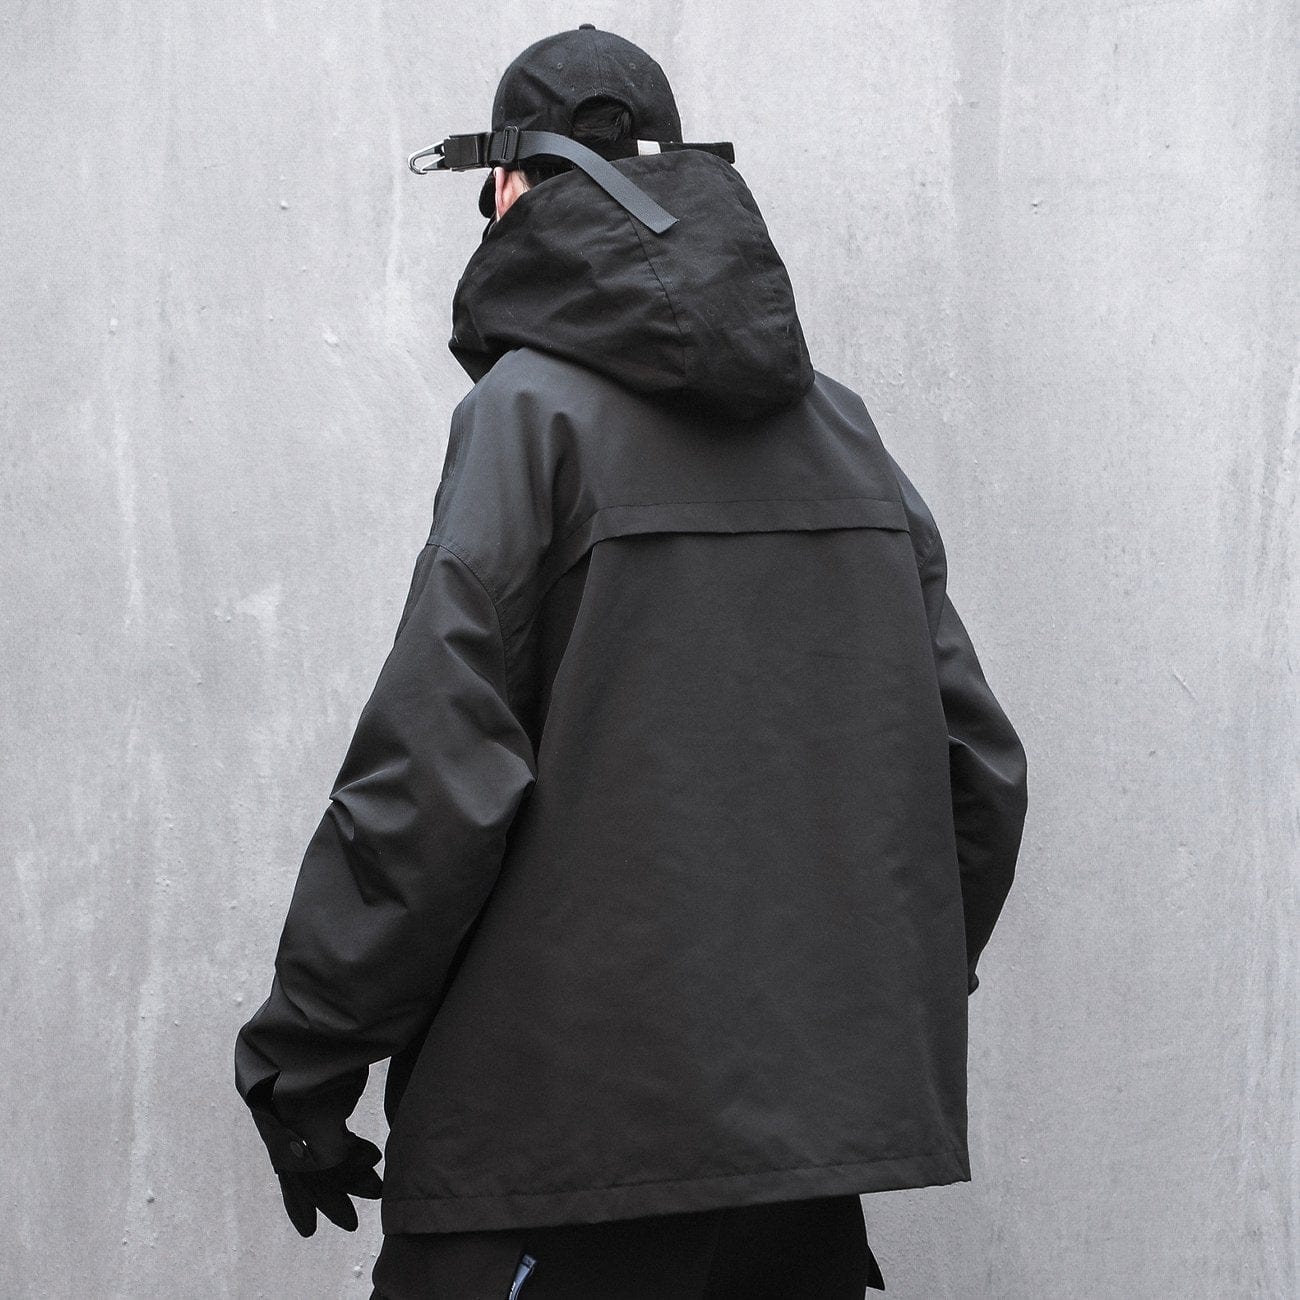 Techwear Multi Pockets Embroidery Cargo Jacket Streetwear Brand Techwear Combat Tactical YUGEN THEORY